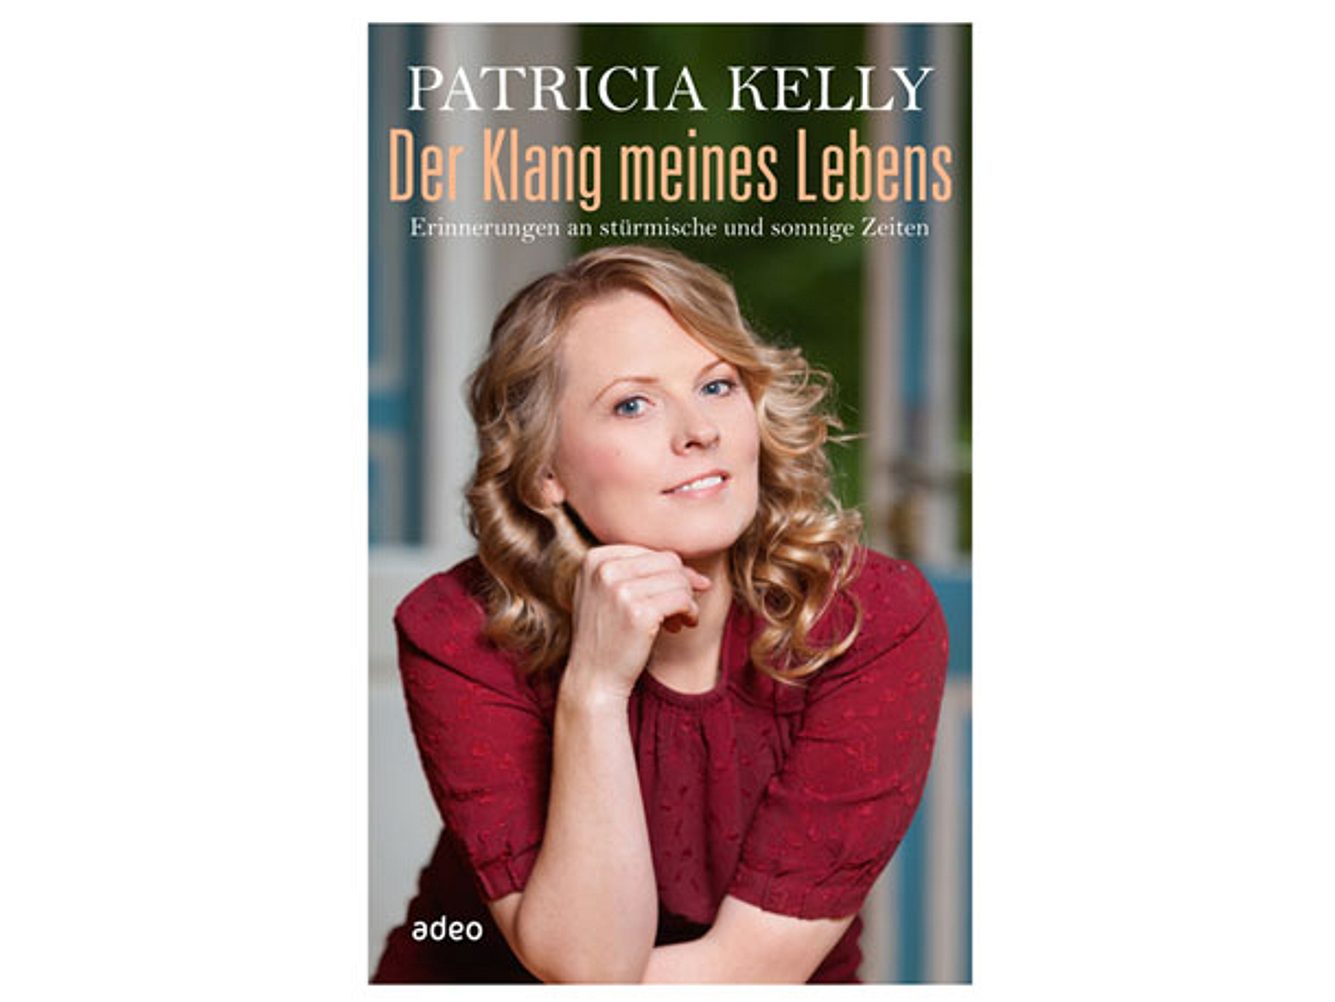 Der Klang meines Lebens von Patricia Kelly ist im adeo Verlag erschienen.